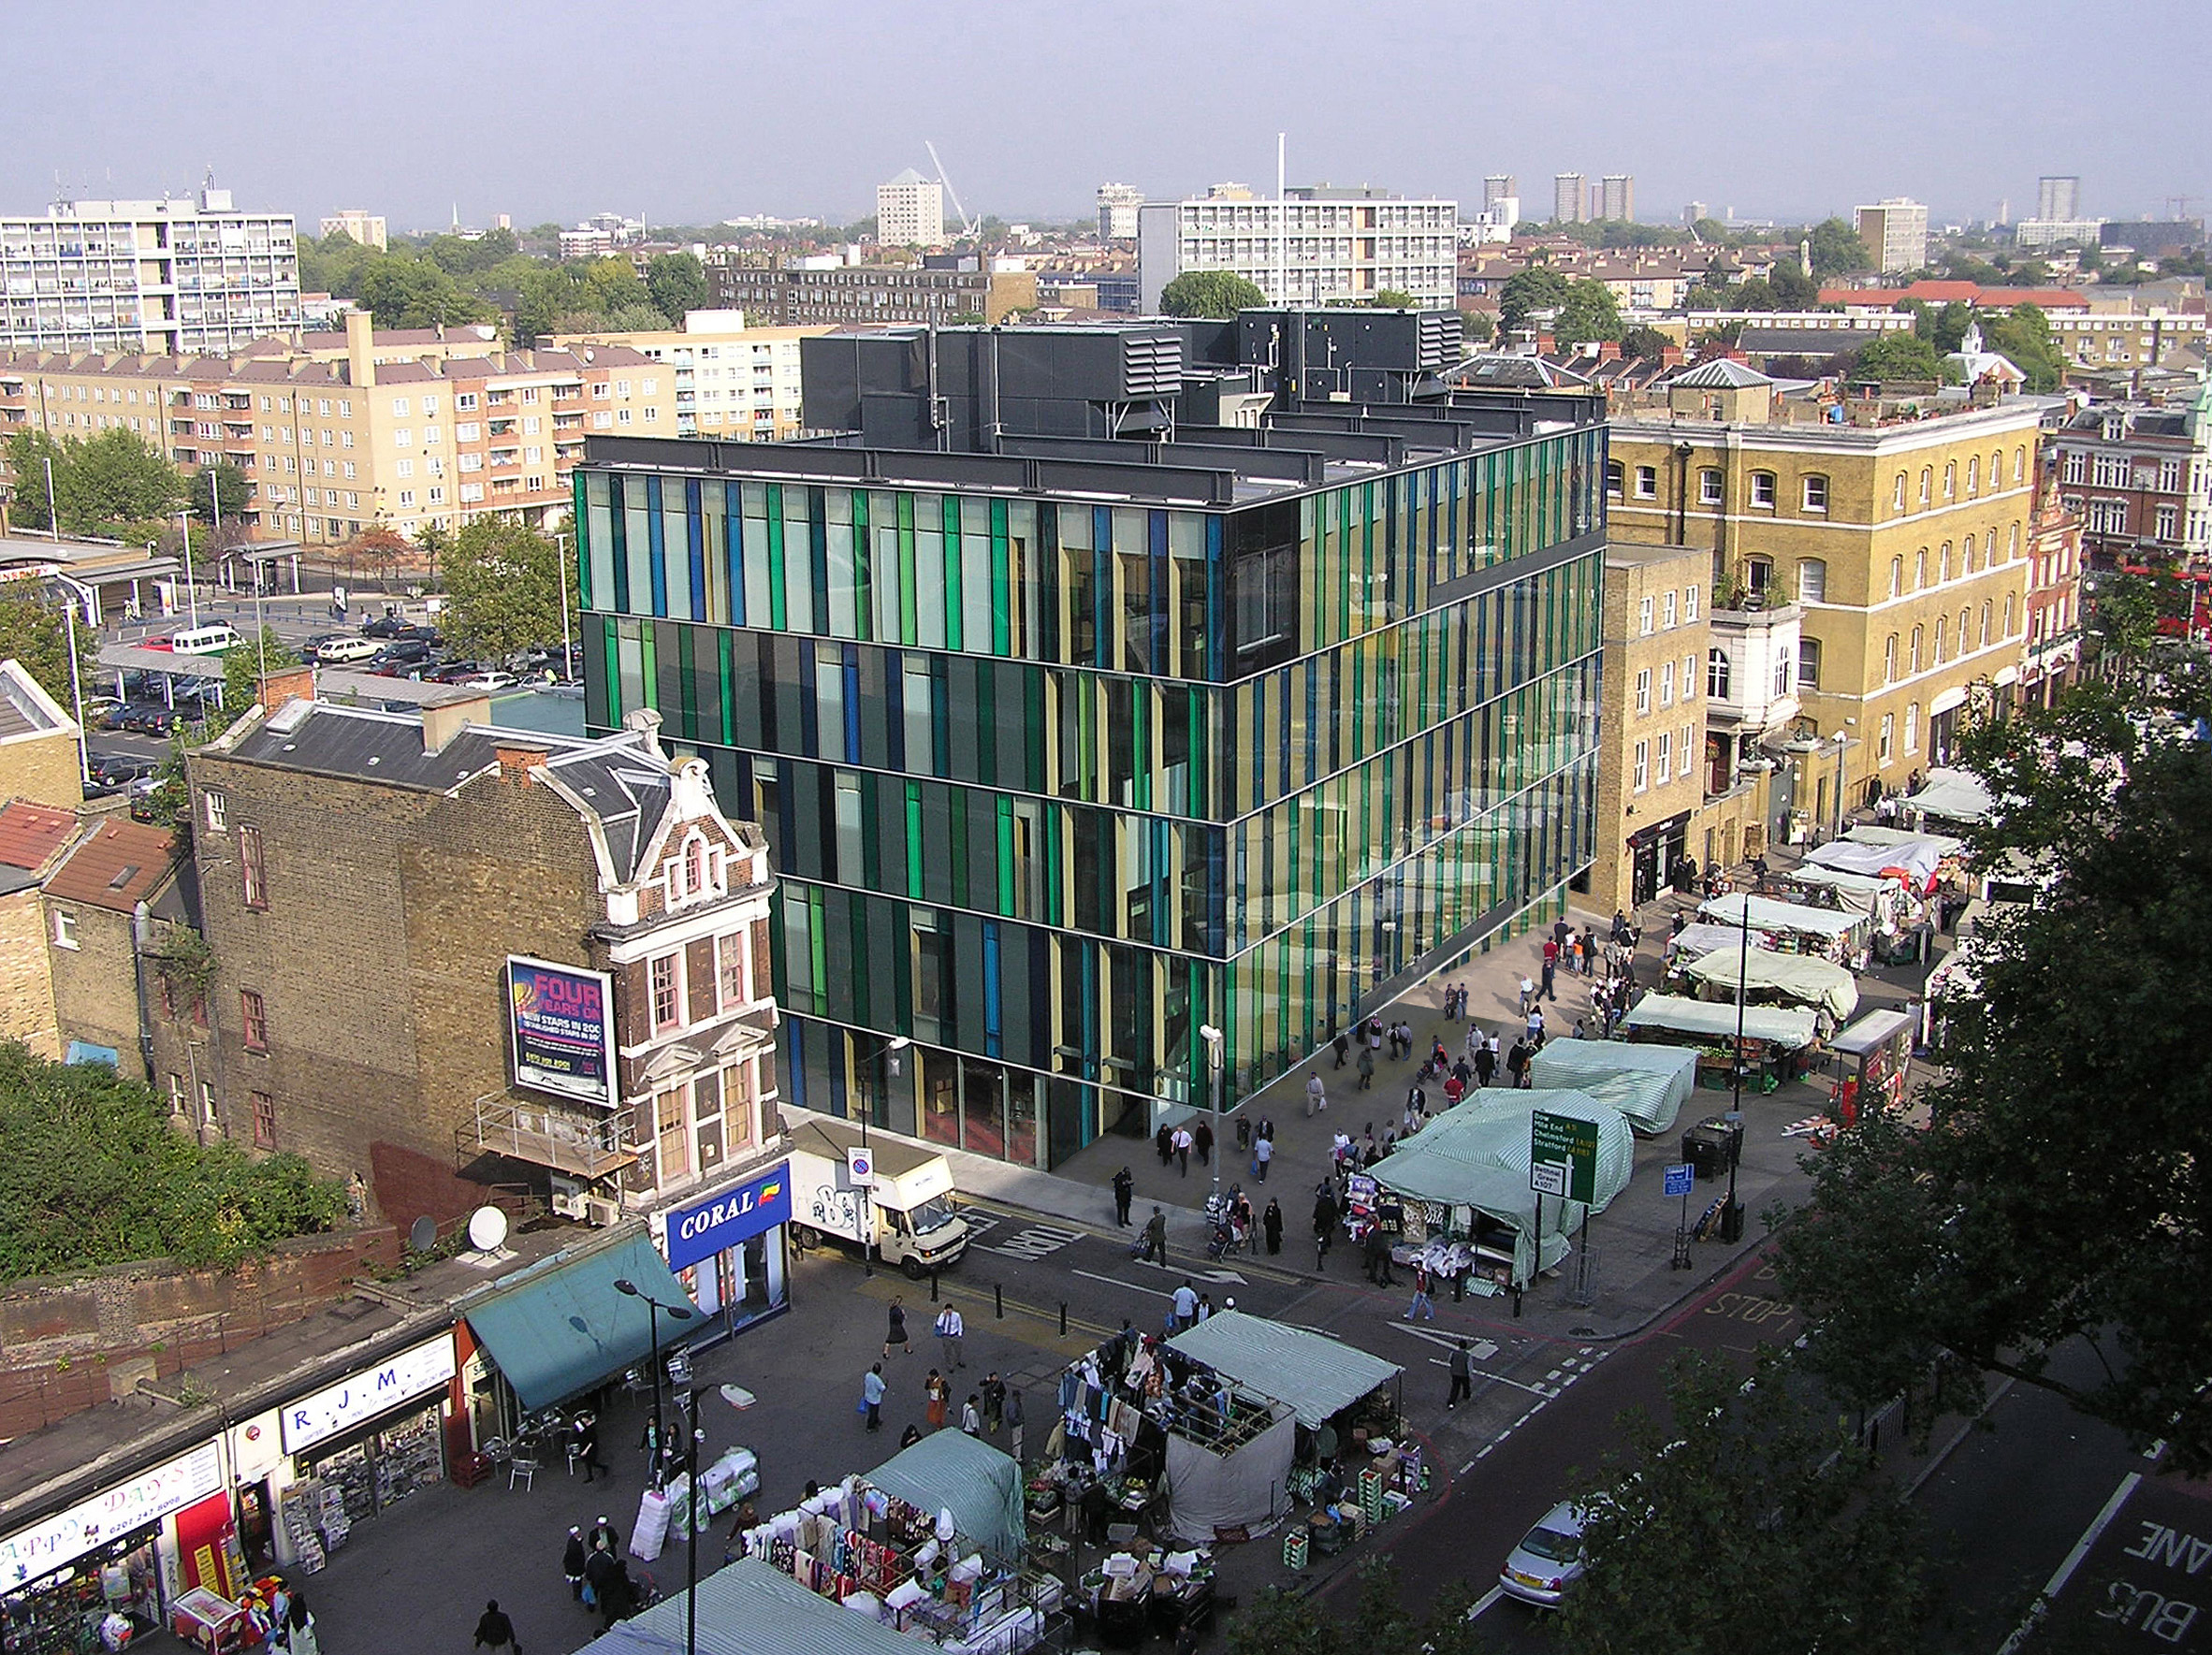 London's Idea store was an early Adjaye project